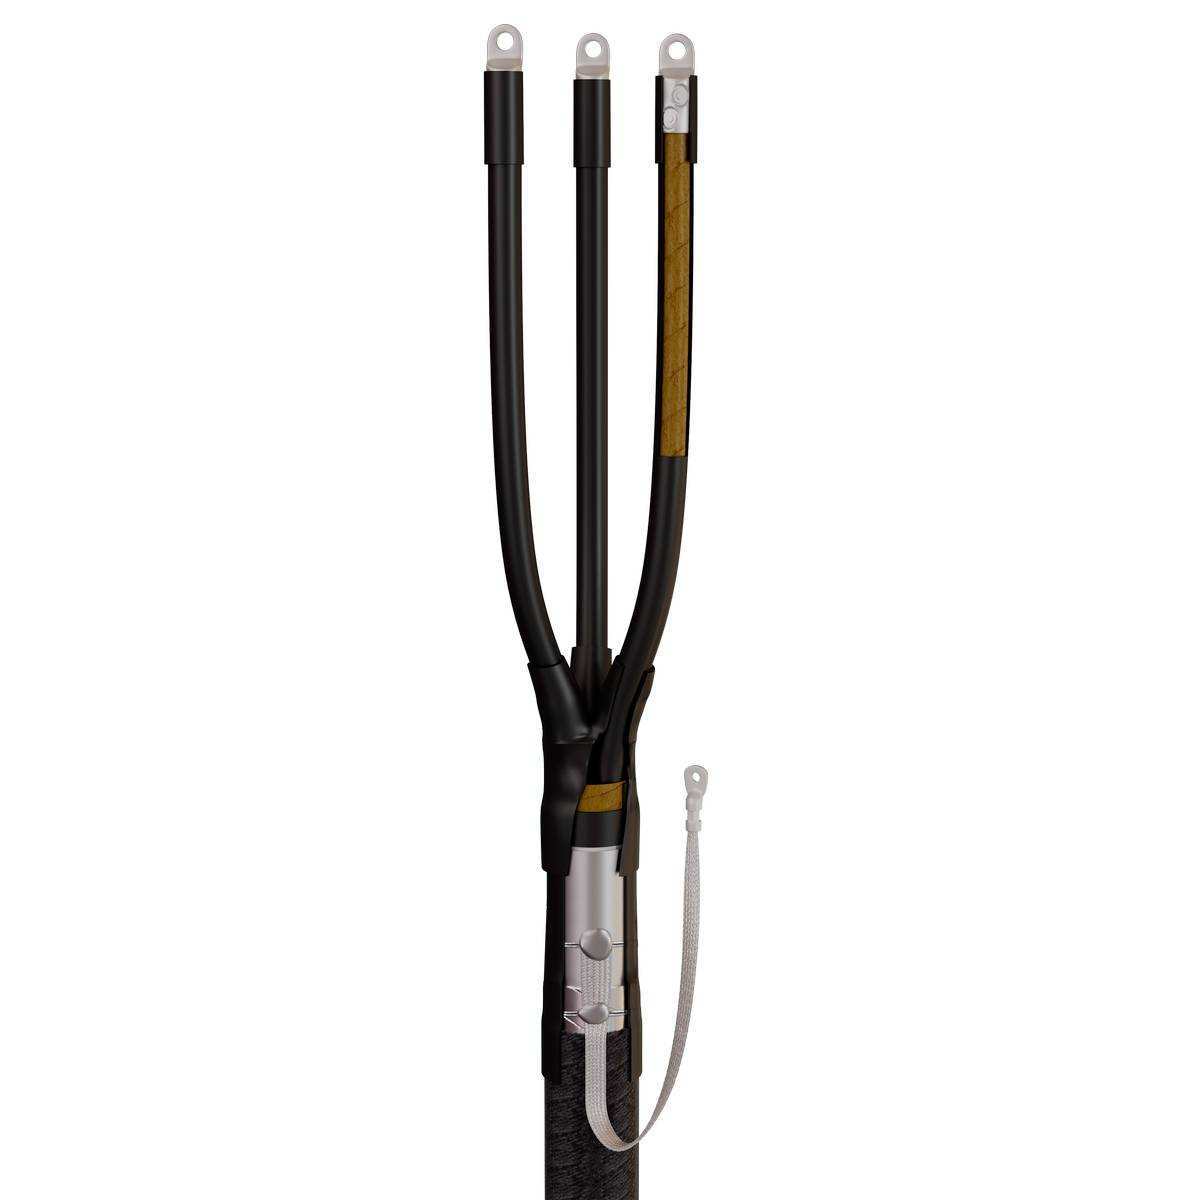 Муфта кабельная концевая 3КВНТп-1-150/240 (Б) (пайка) для кабелей с бумажной или пластмассовой изоляцией до 1кВ с болтовыми наконечниками